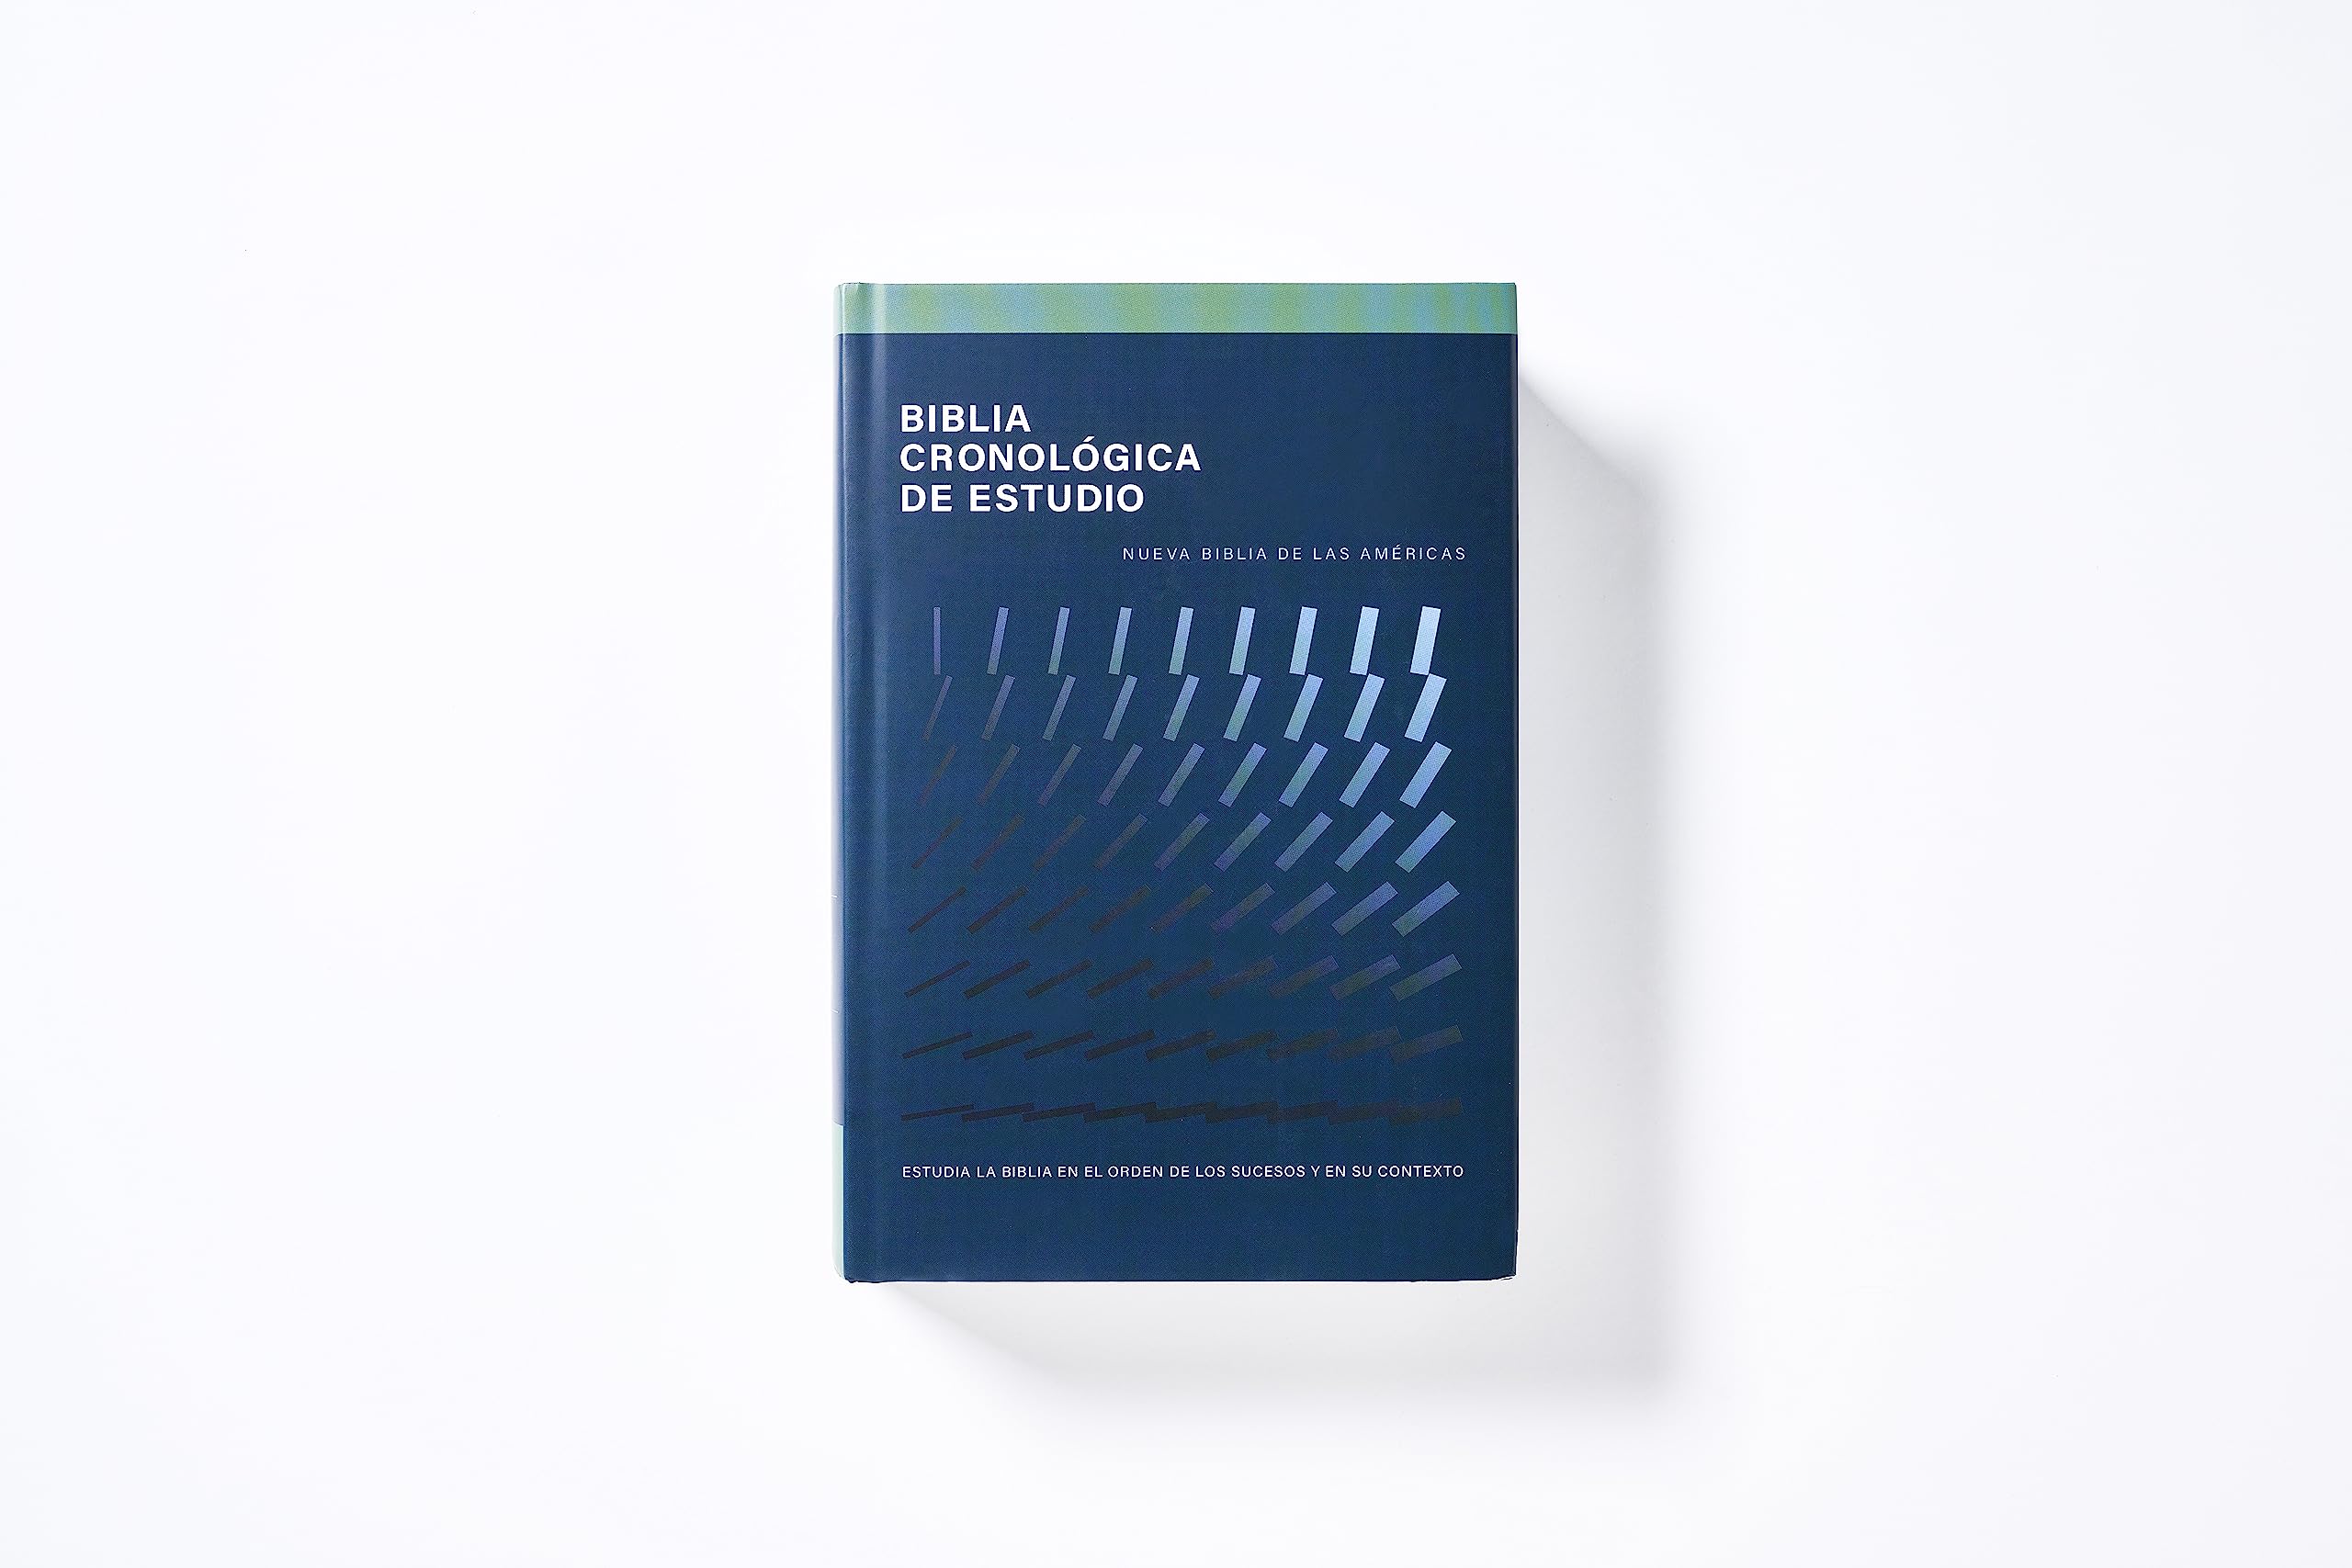 NBLA, Biblia Cronológica de Estudio, Tapa Dura, Interior a Cuatro Colores (Spanish Edition)